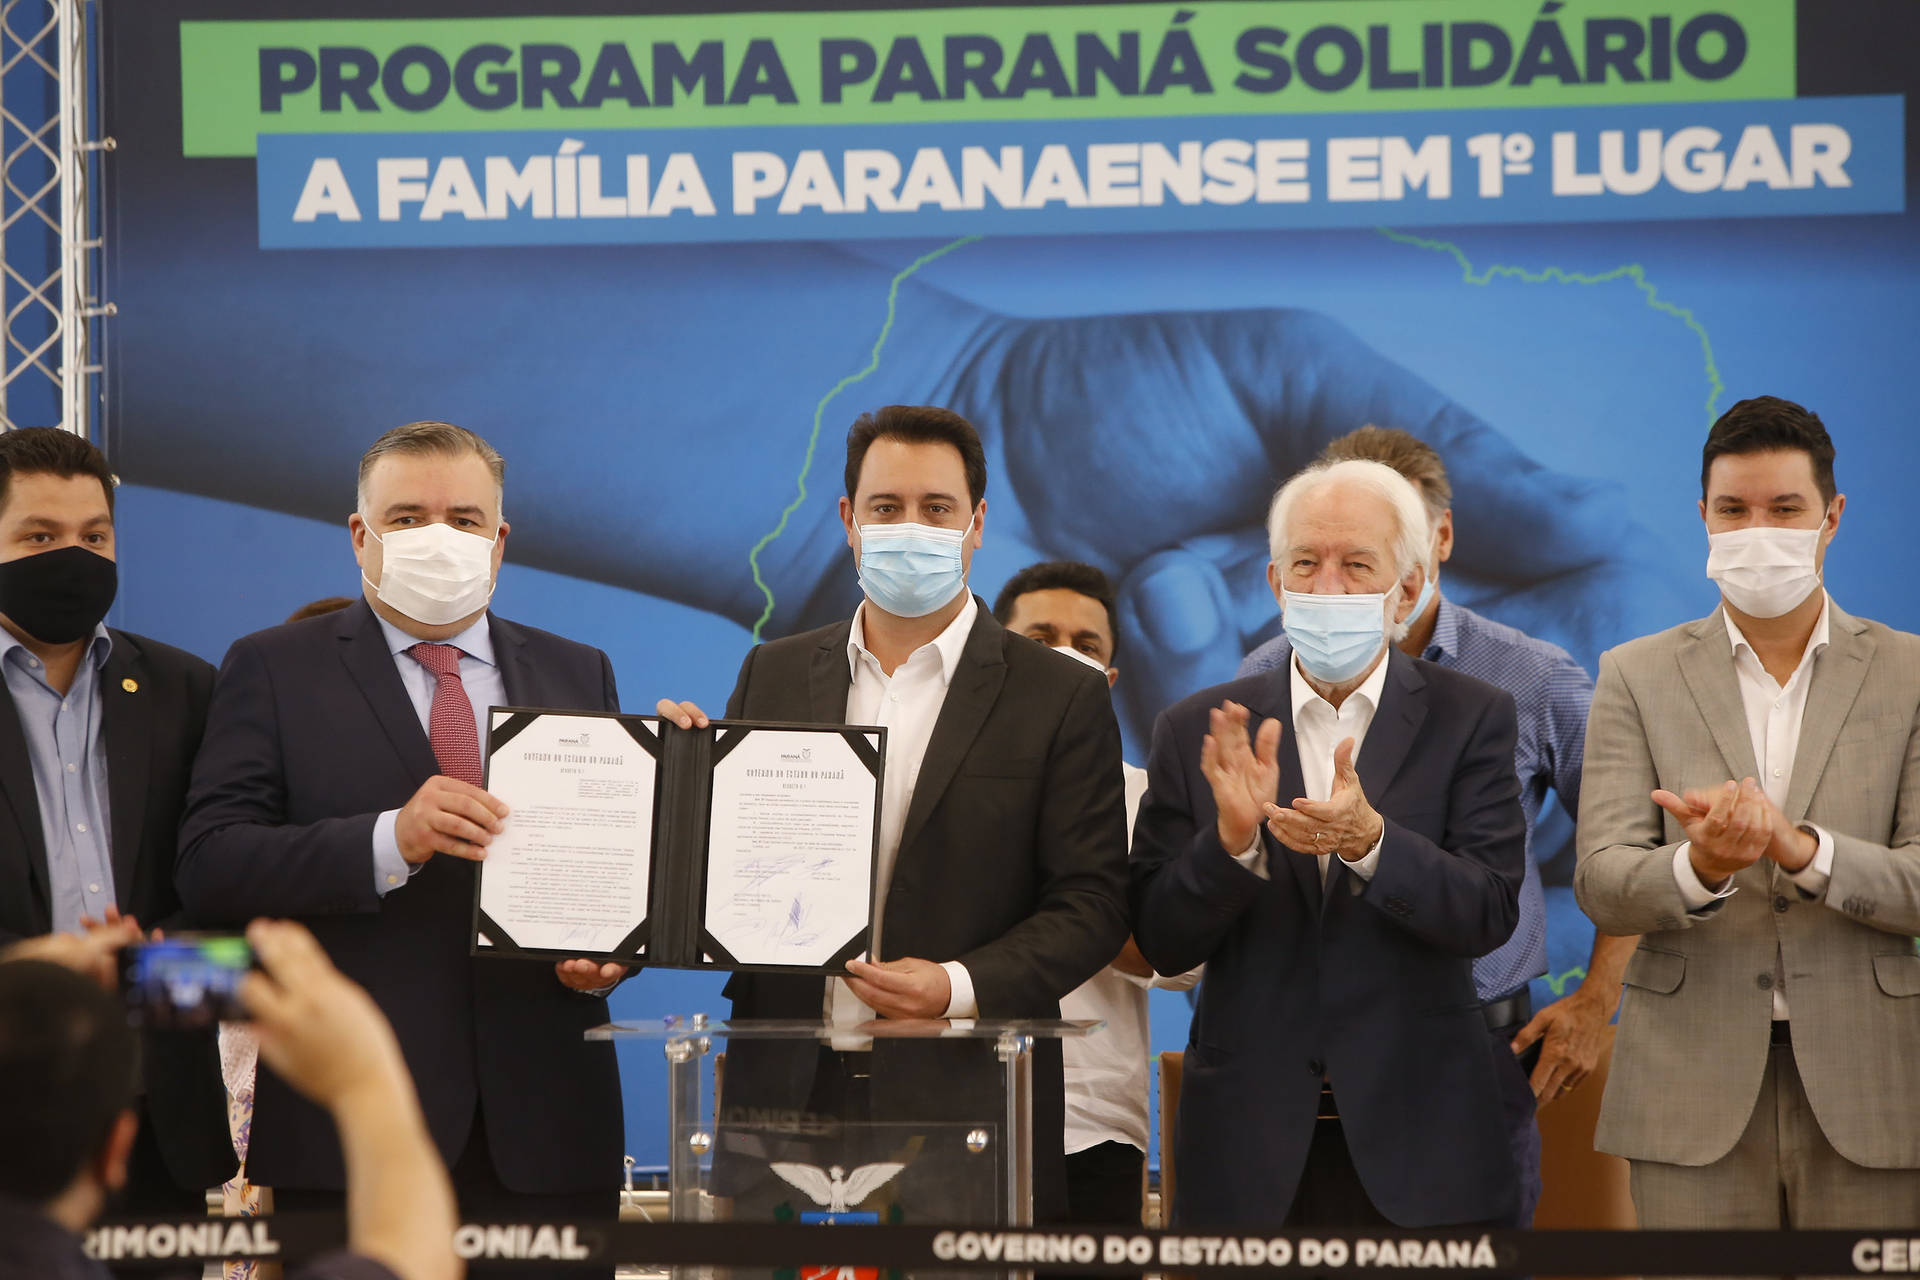 Paraná Solidário é um conjunto de ações sociais criadas pelo Governo do Estado para auxiliar famílias em estado de extrema pobreza e pobreza.